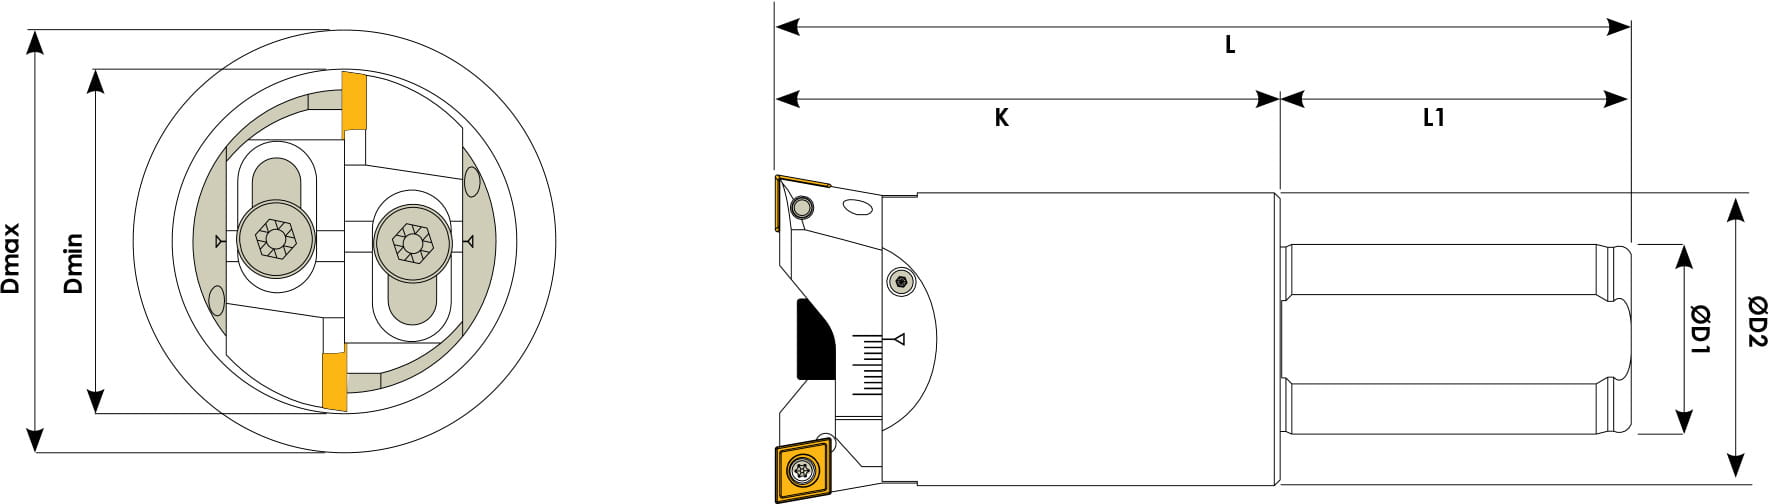 Technische Zeichnung eines Ausbohrwerkzeugs. Schwarze Linien auf weißem Hintergrund. Die Wendeplatten sind in Gelb angezeigt. Mit Größenangaben. Links befindet sich eine Vorderansicht, Rechts eine Seitenansicht.